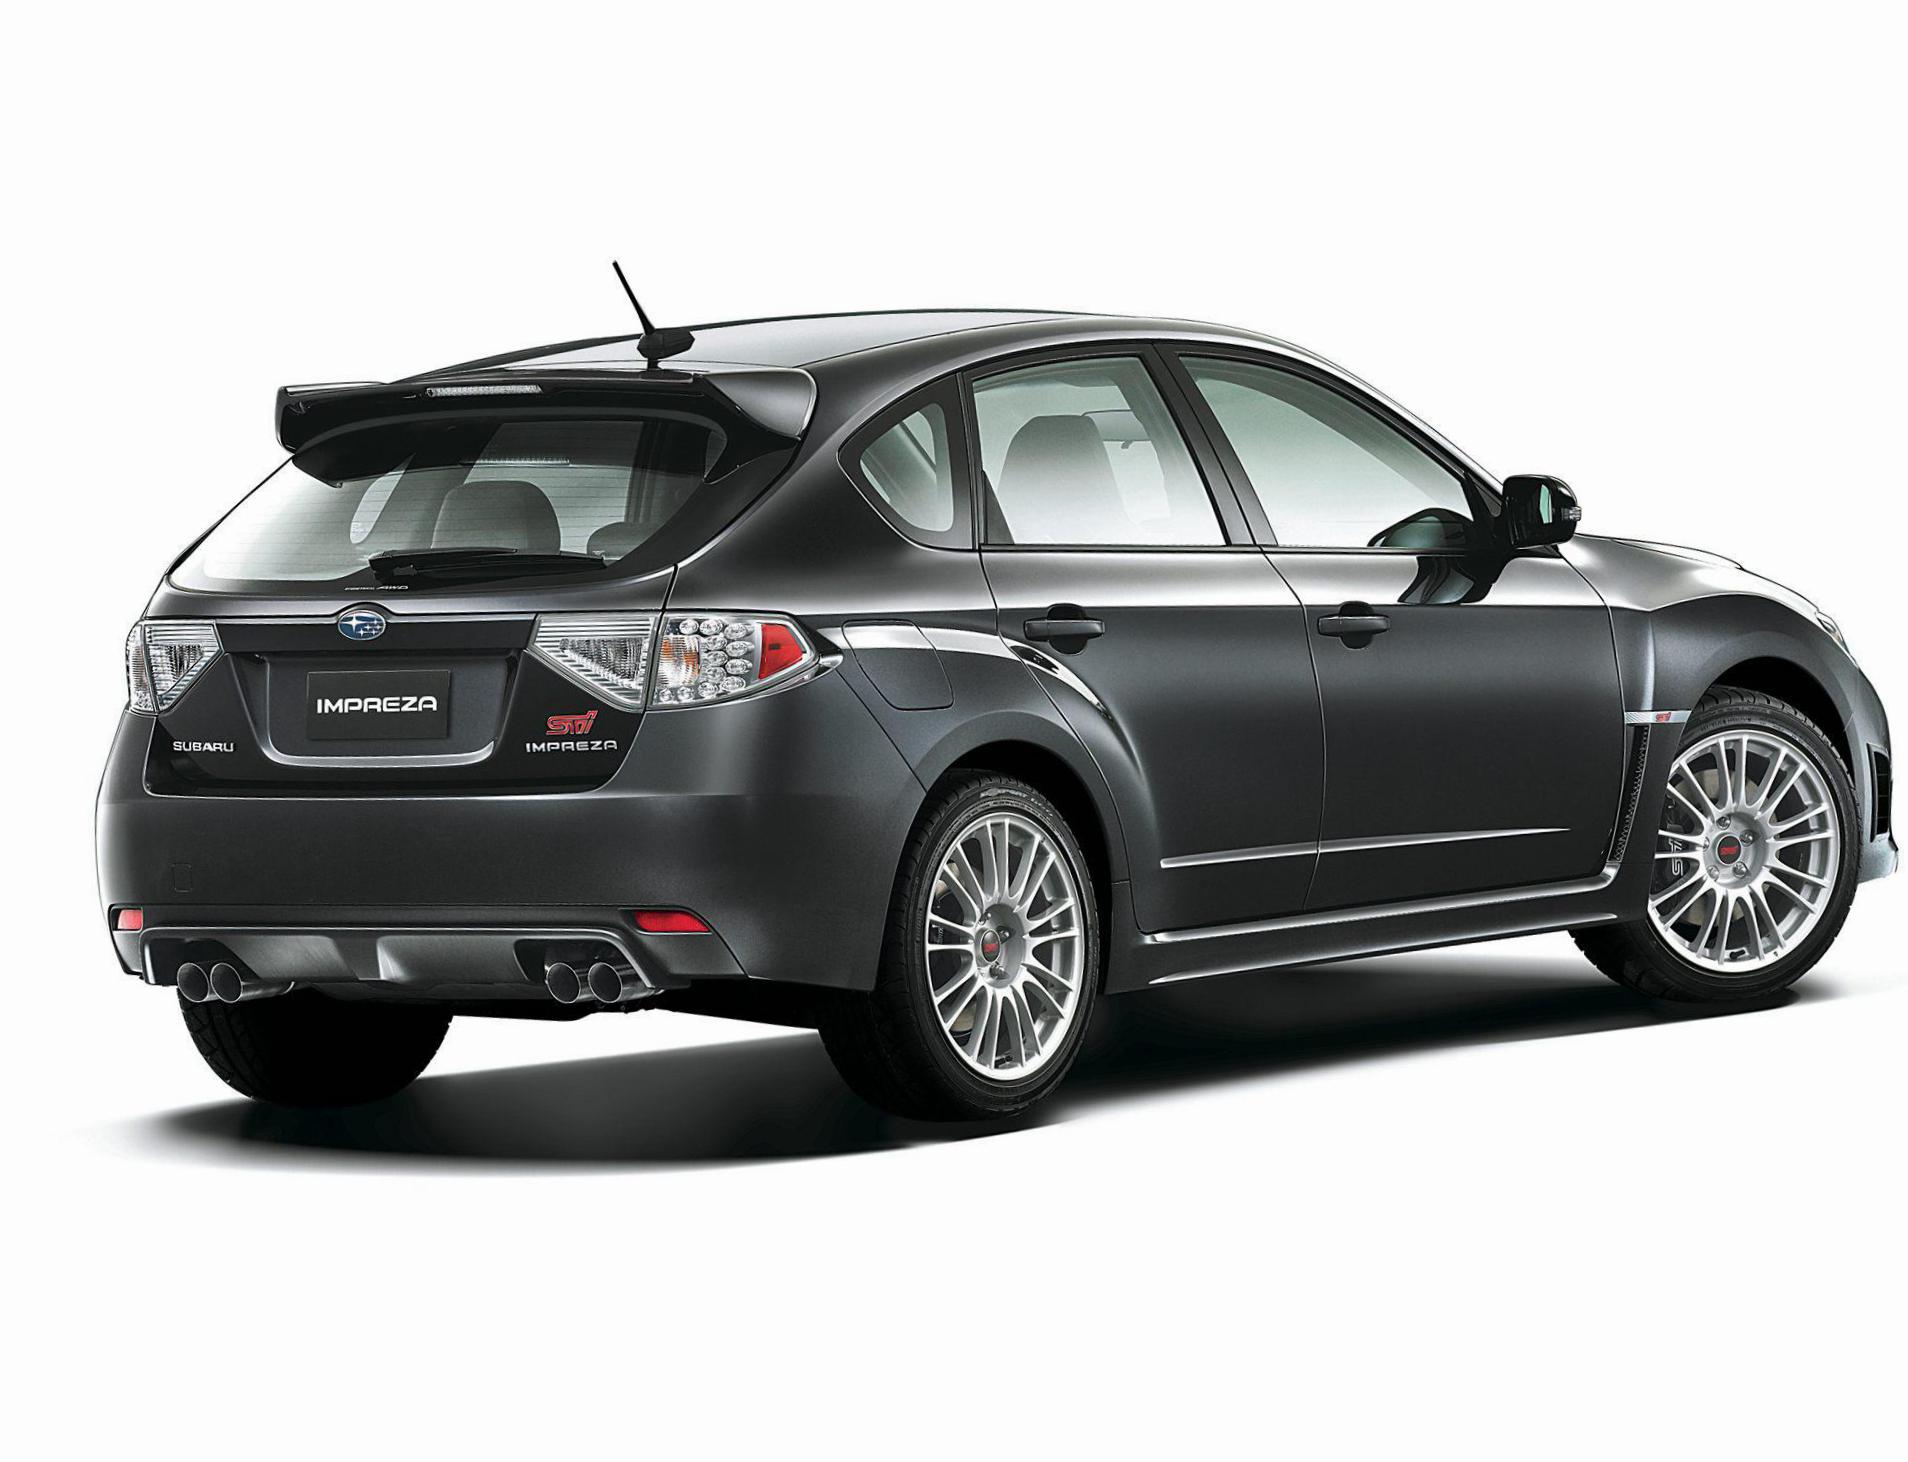 Subaru Impreza approved cabriolet